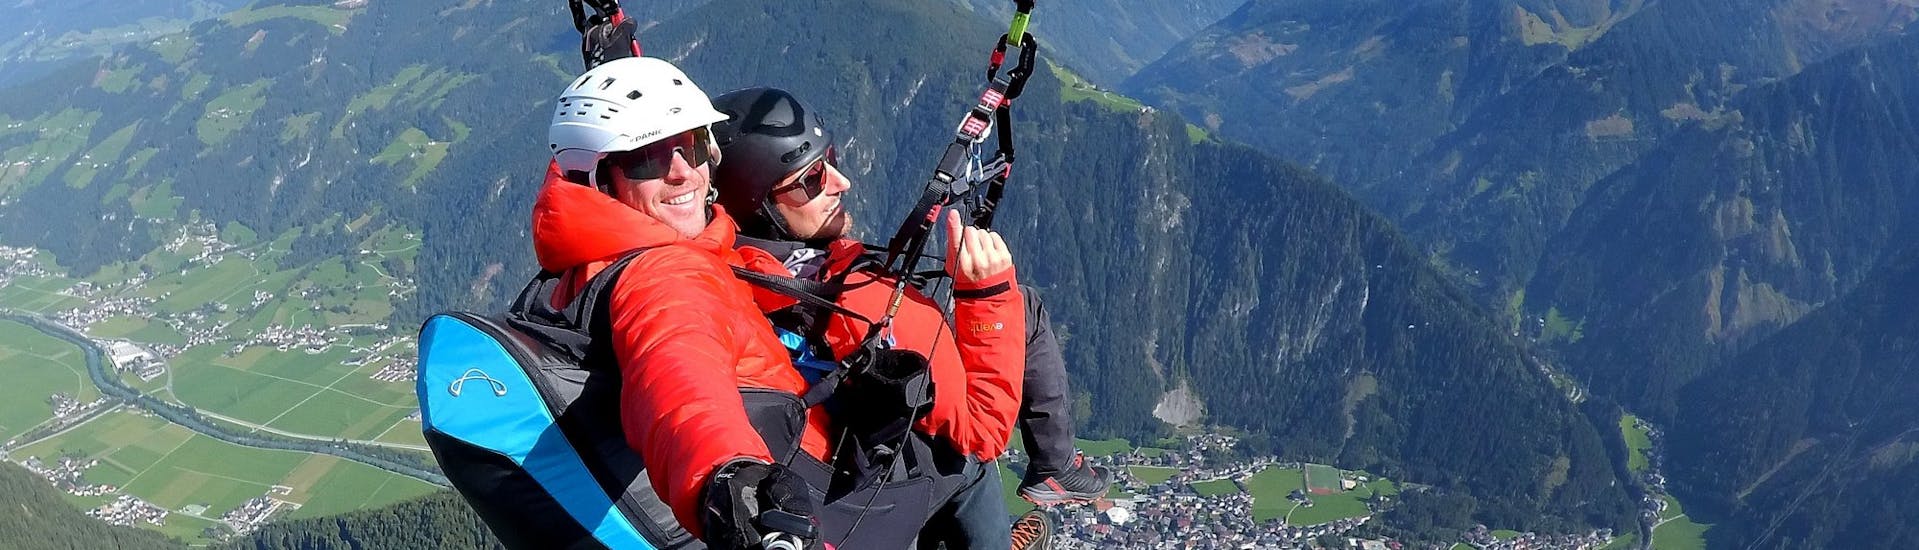 Een klant en zijn piloot van AIRflow Tandem Paragliding genieten tijdens hun Classic Plus vlucht in het Zillertal van het uitzicht op de bergen.